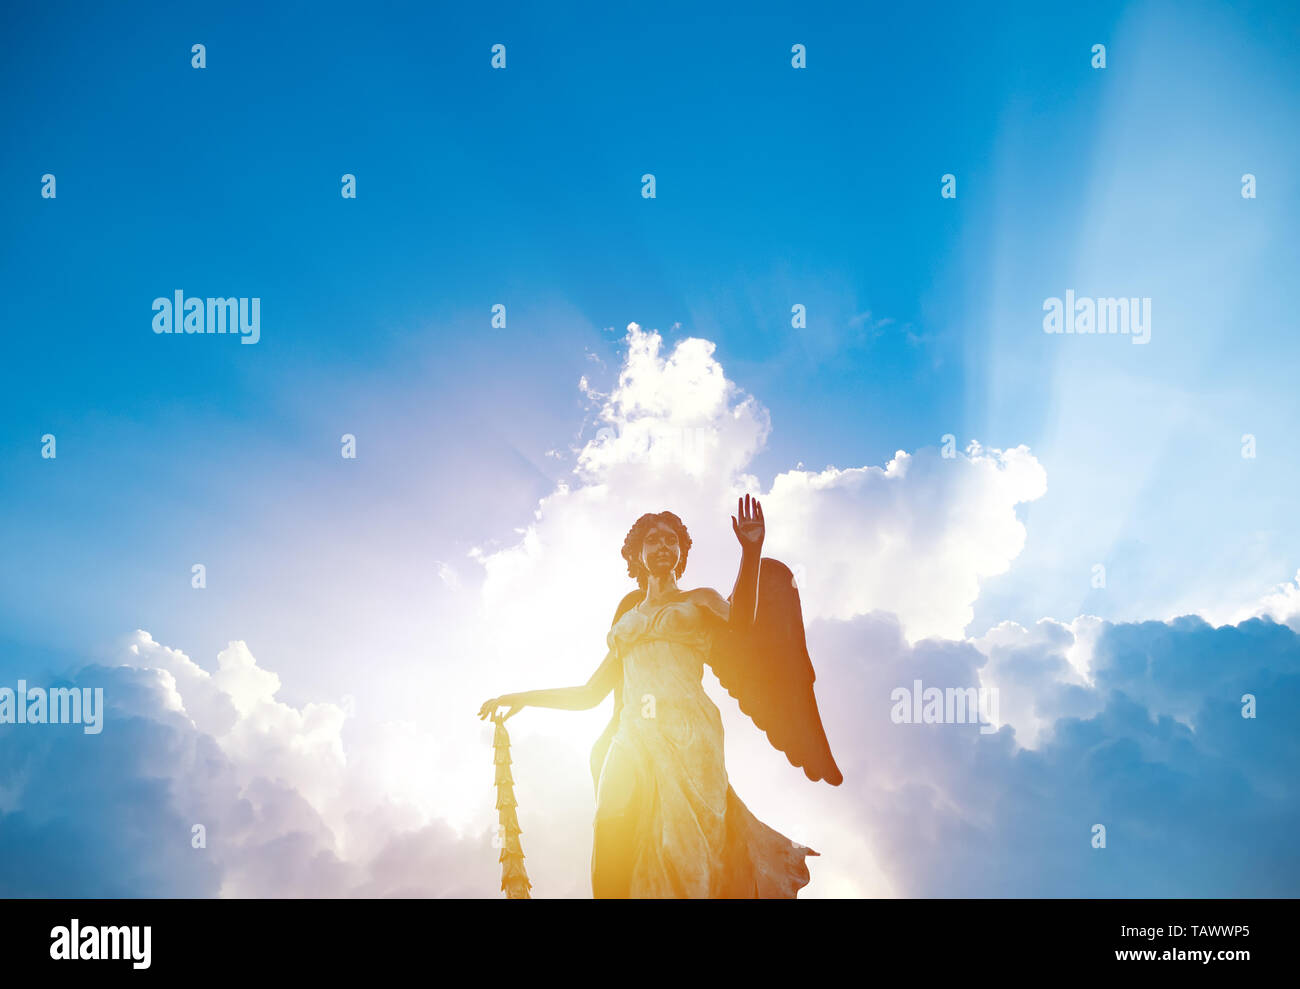 Silueta de angel estatua escultura con luz solar brillante detrás de la nube blanca con fondo de cielo azul Foto de stock